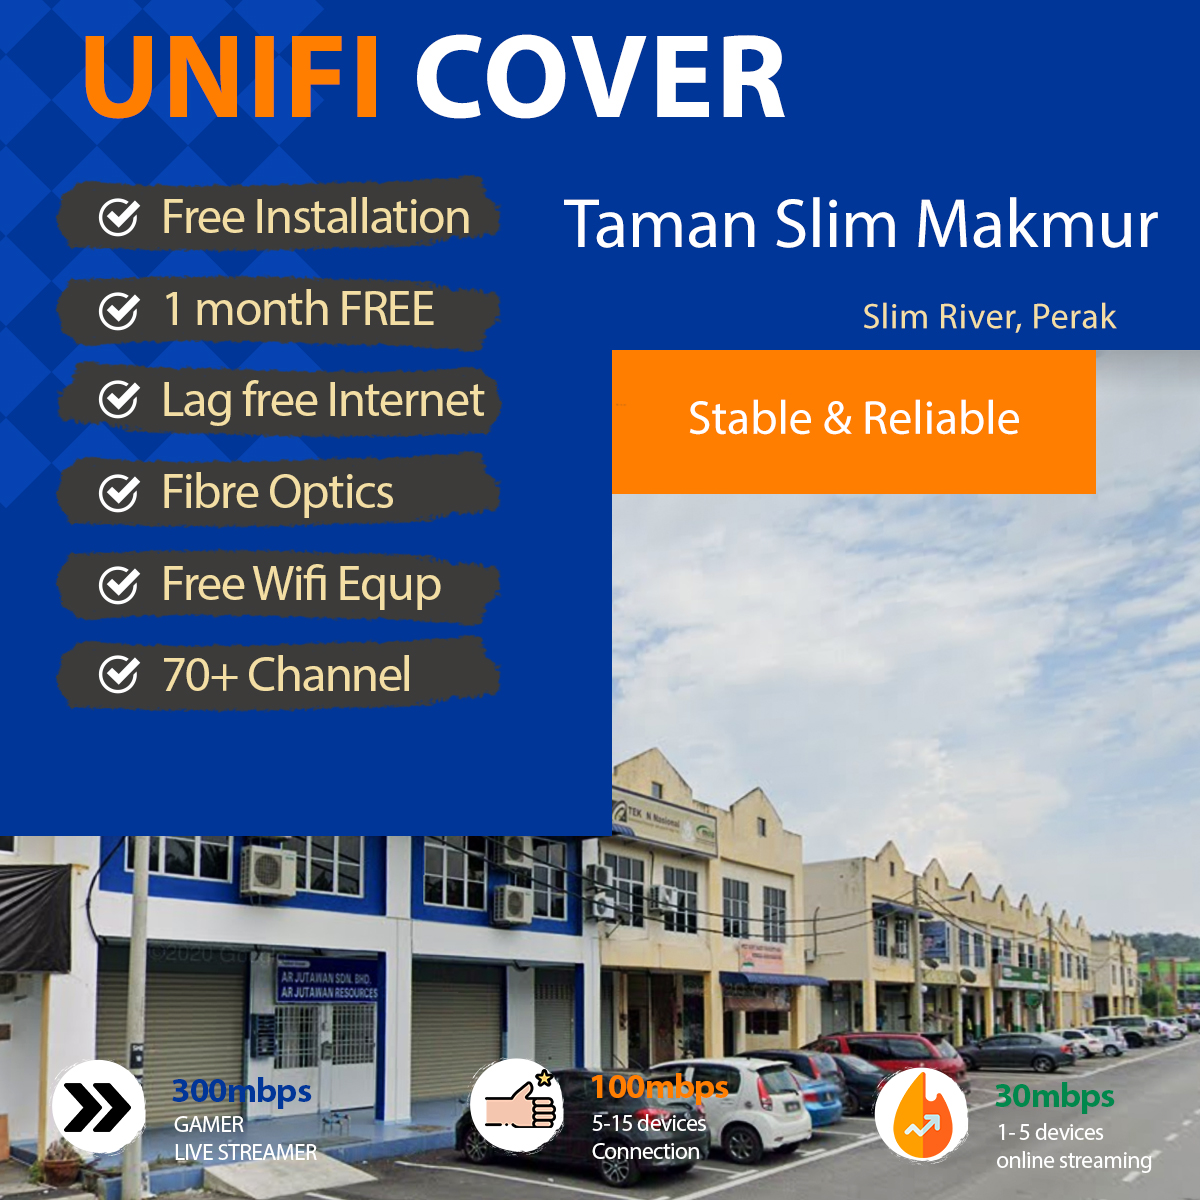 unifi Slim River Coverage – unifi Cover Taman Slim Makmur Slim River, Perak With Fibre Optics Broadband